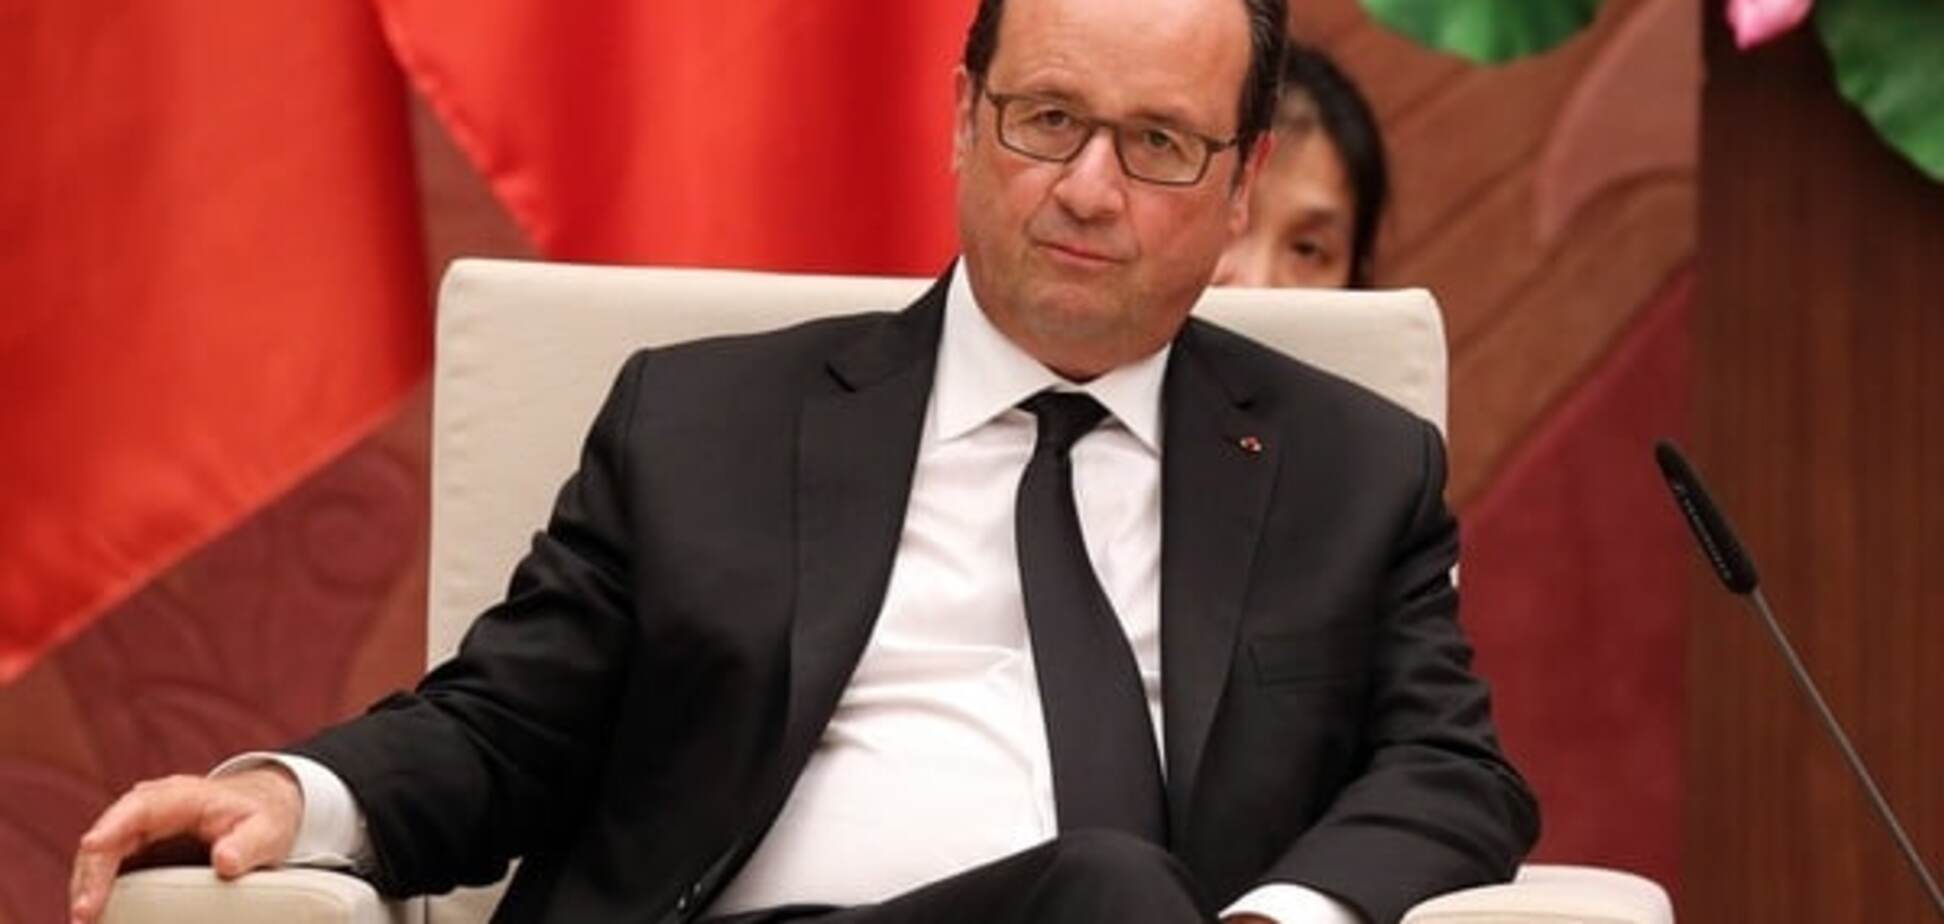 Олланд сойдет с дистанции в первом туре на выборах президента Франции – опрос